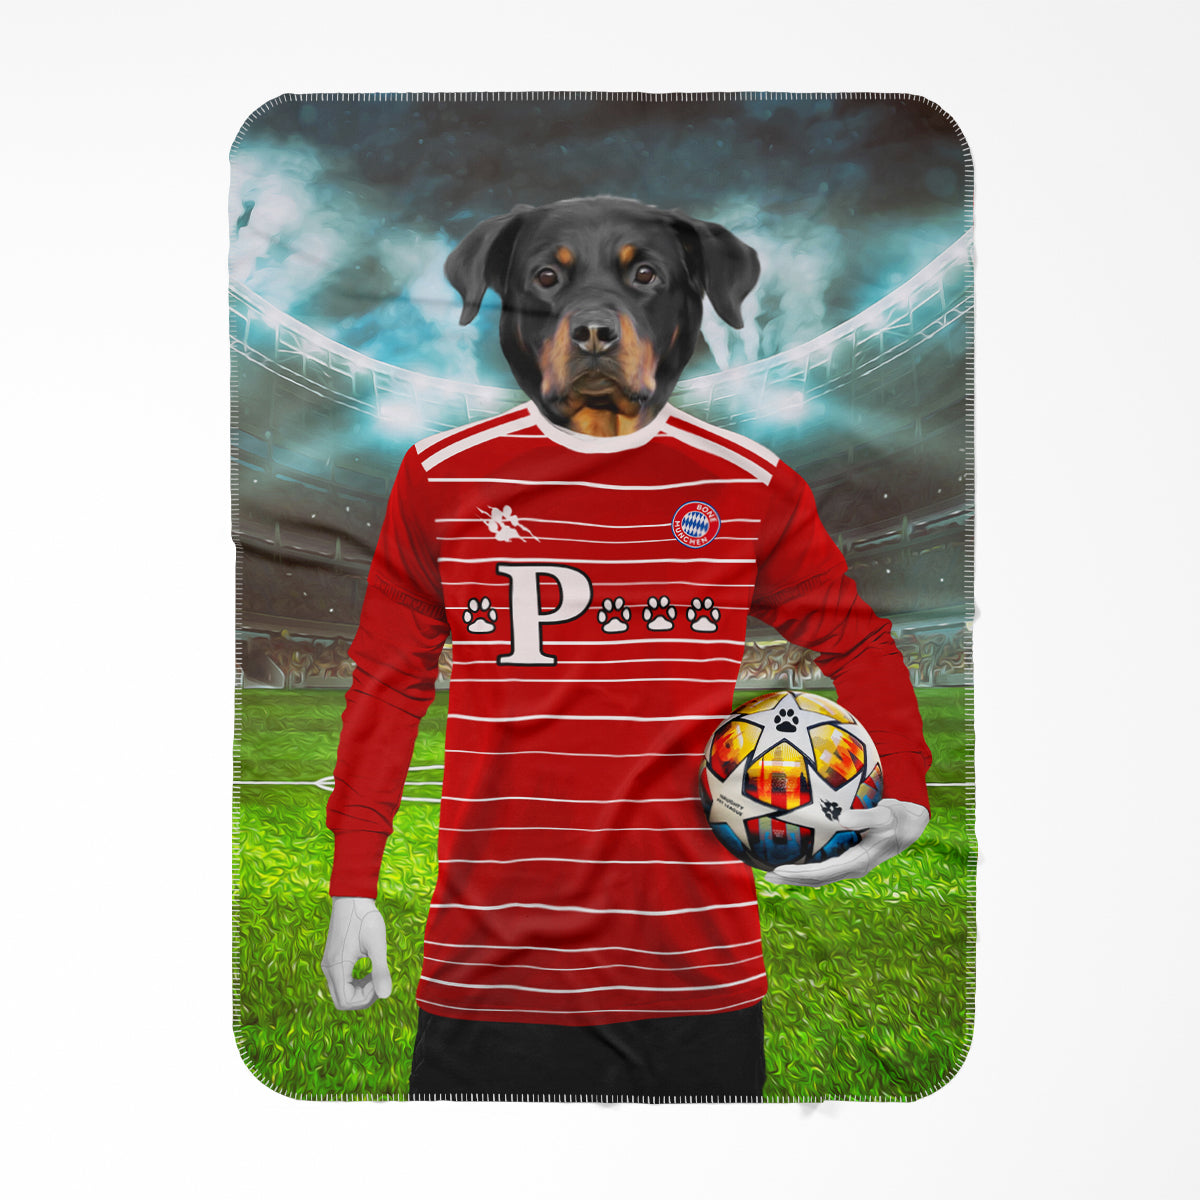 Pawyern Munich Football Club Paw & Glory, pawandglory, Pet Portraits blanket, pet picture on blanket, custom pet blanket, dog photo blanket, blanket with dog on it, dog on blanket, best pet photo blanket